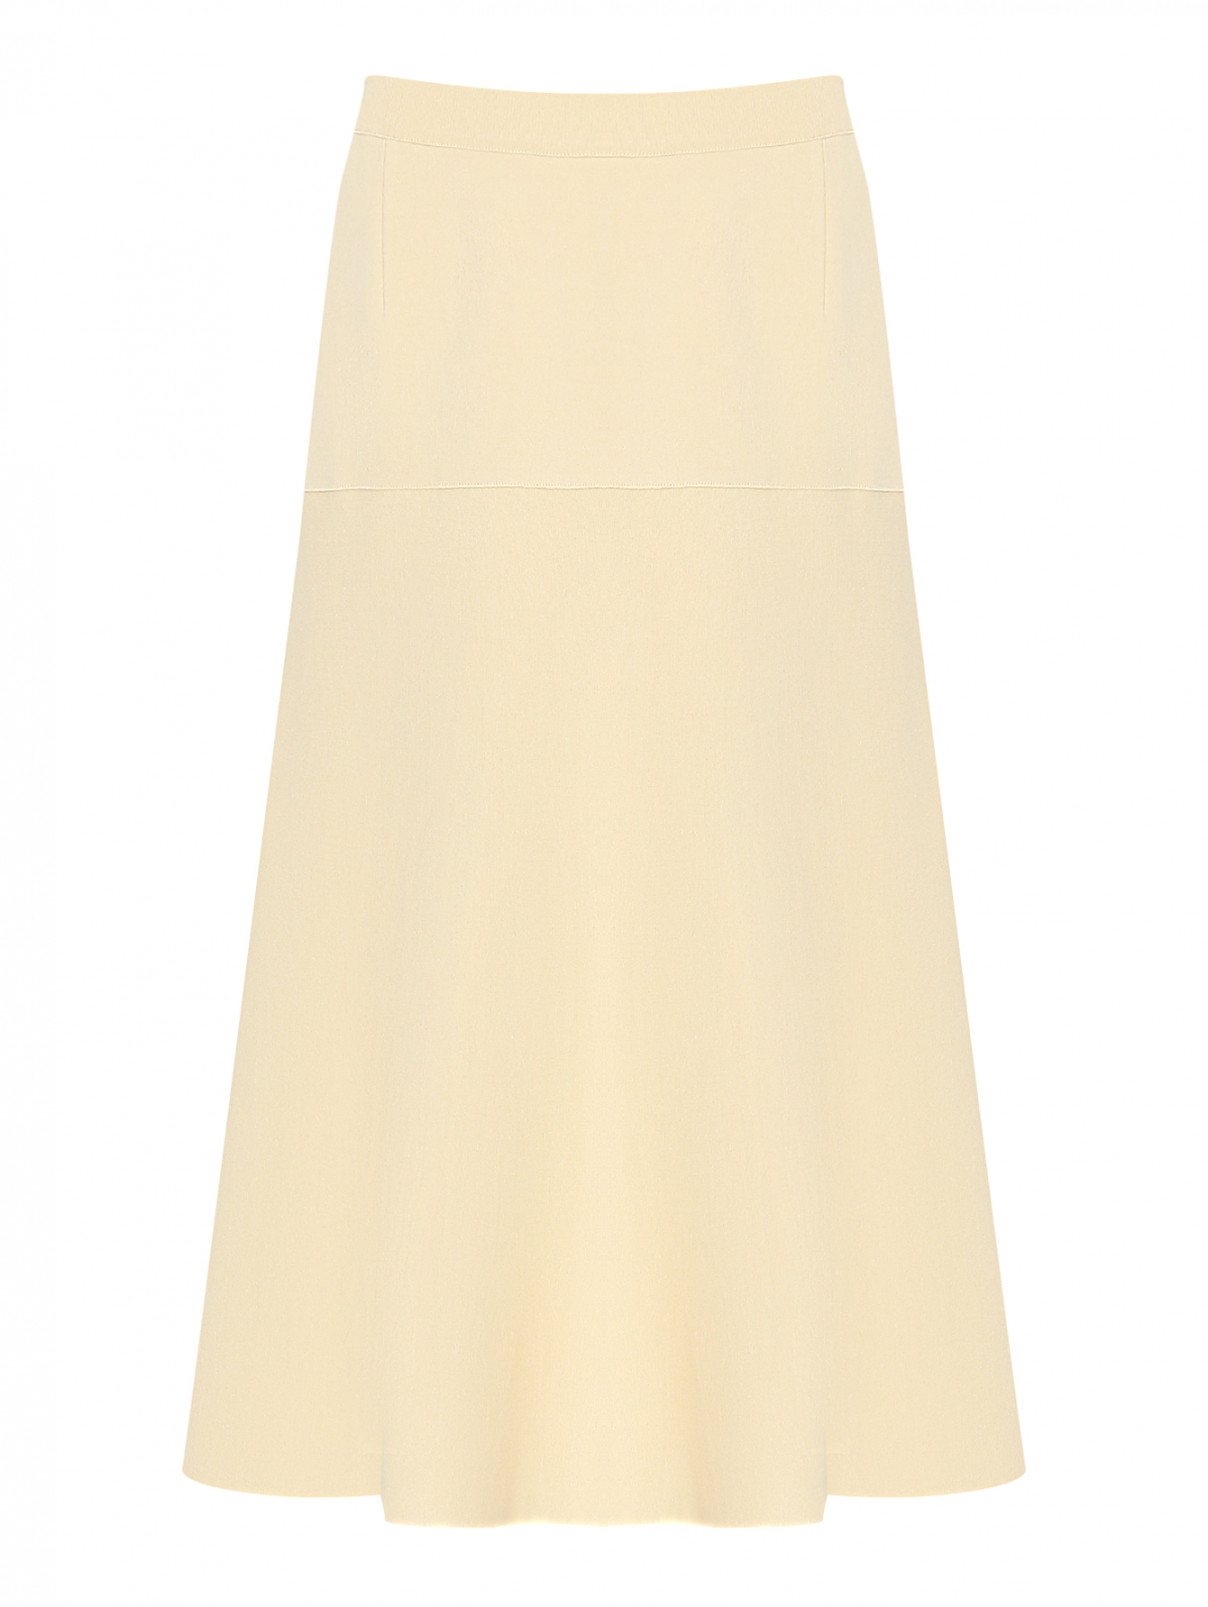 Трикотажная юбка-миди на резинке MRZ  –  Общий вид  – Цвет:  Бежевый